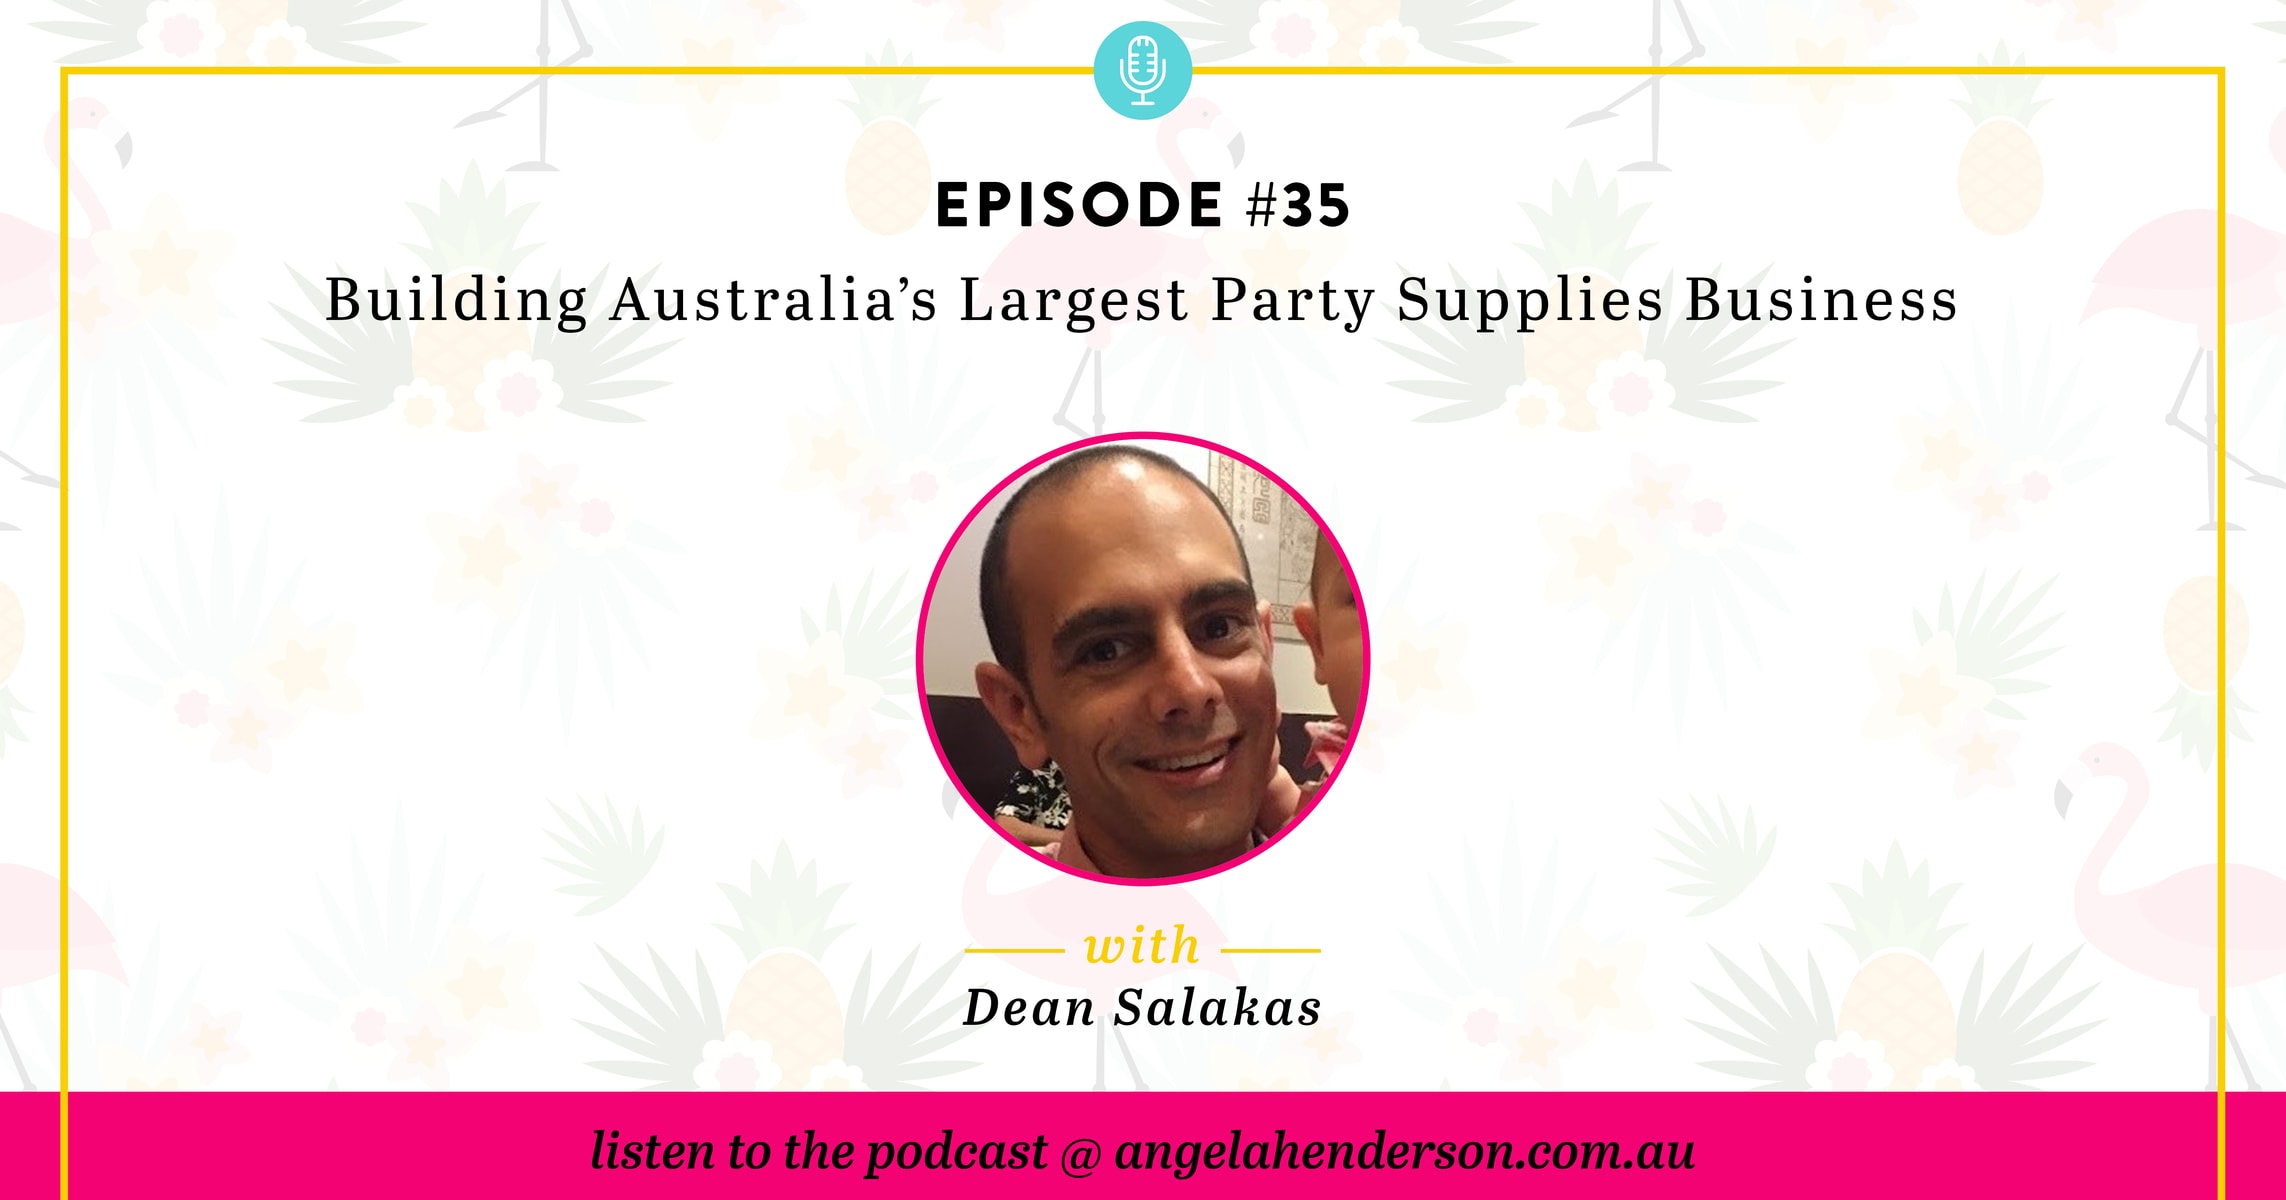 Dean Salakas - Building Australia's Largest Party Supplies Business